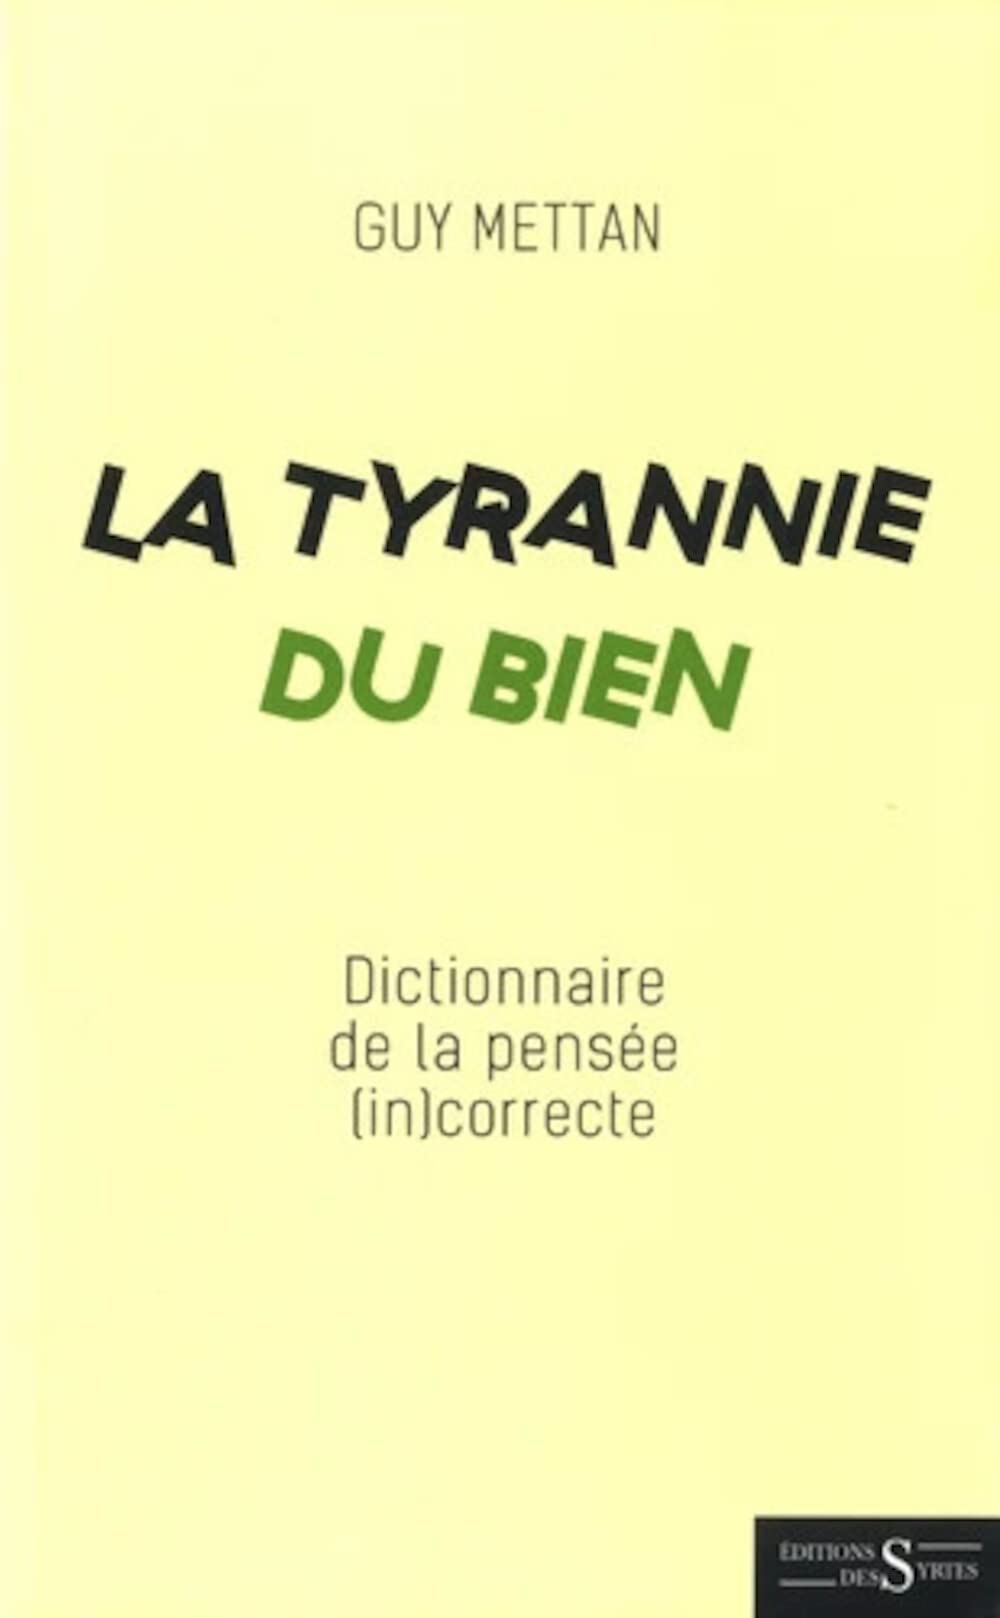 Book La Tyrannie du Bien - Dictionnaire de la pensée (in)correcte Guy Mettan